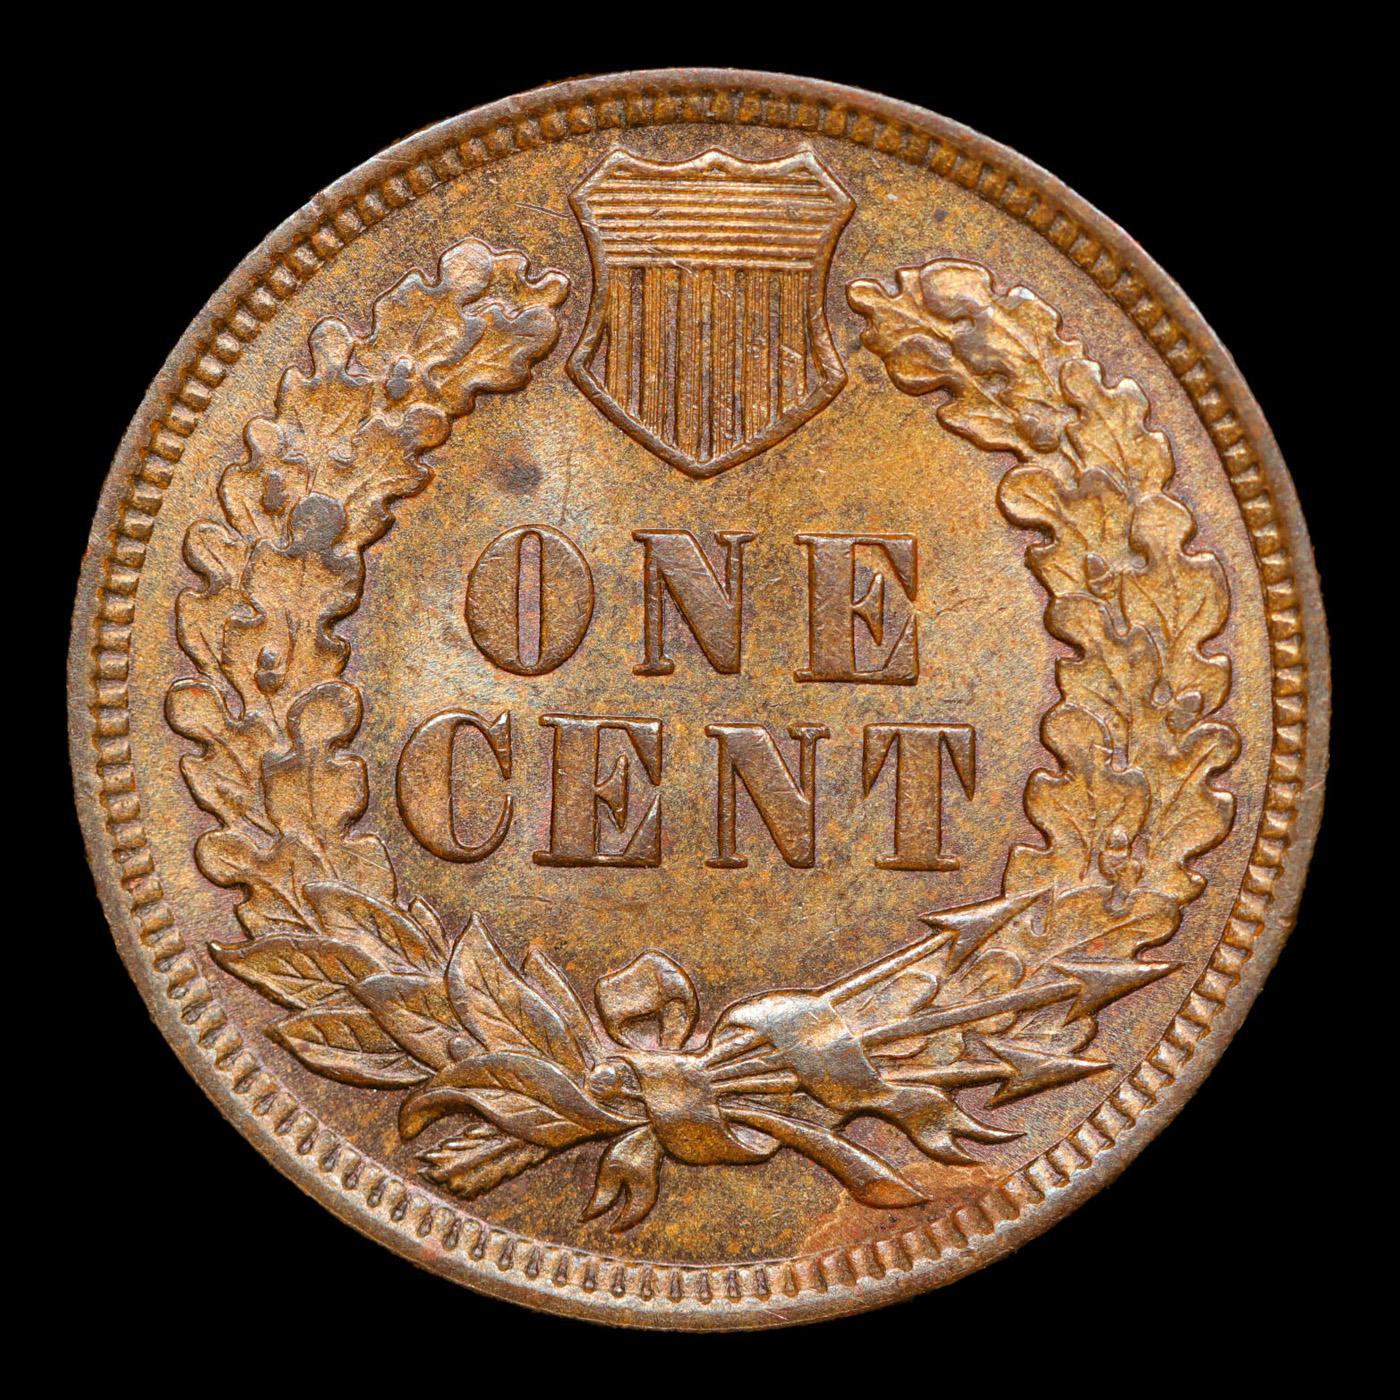 1907 Indian Cent 1c Grades Select Unc